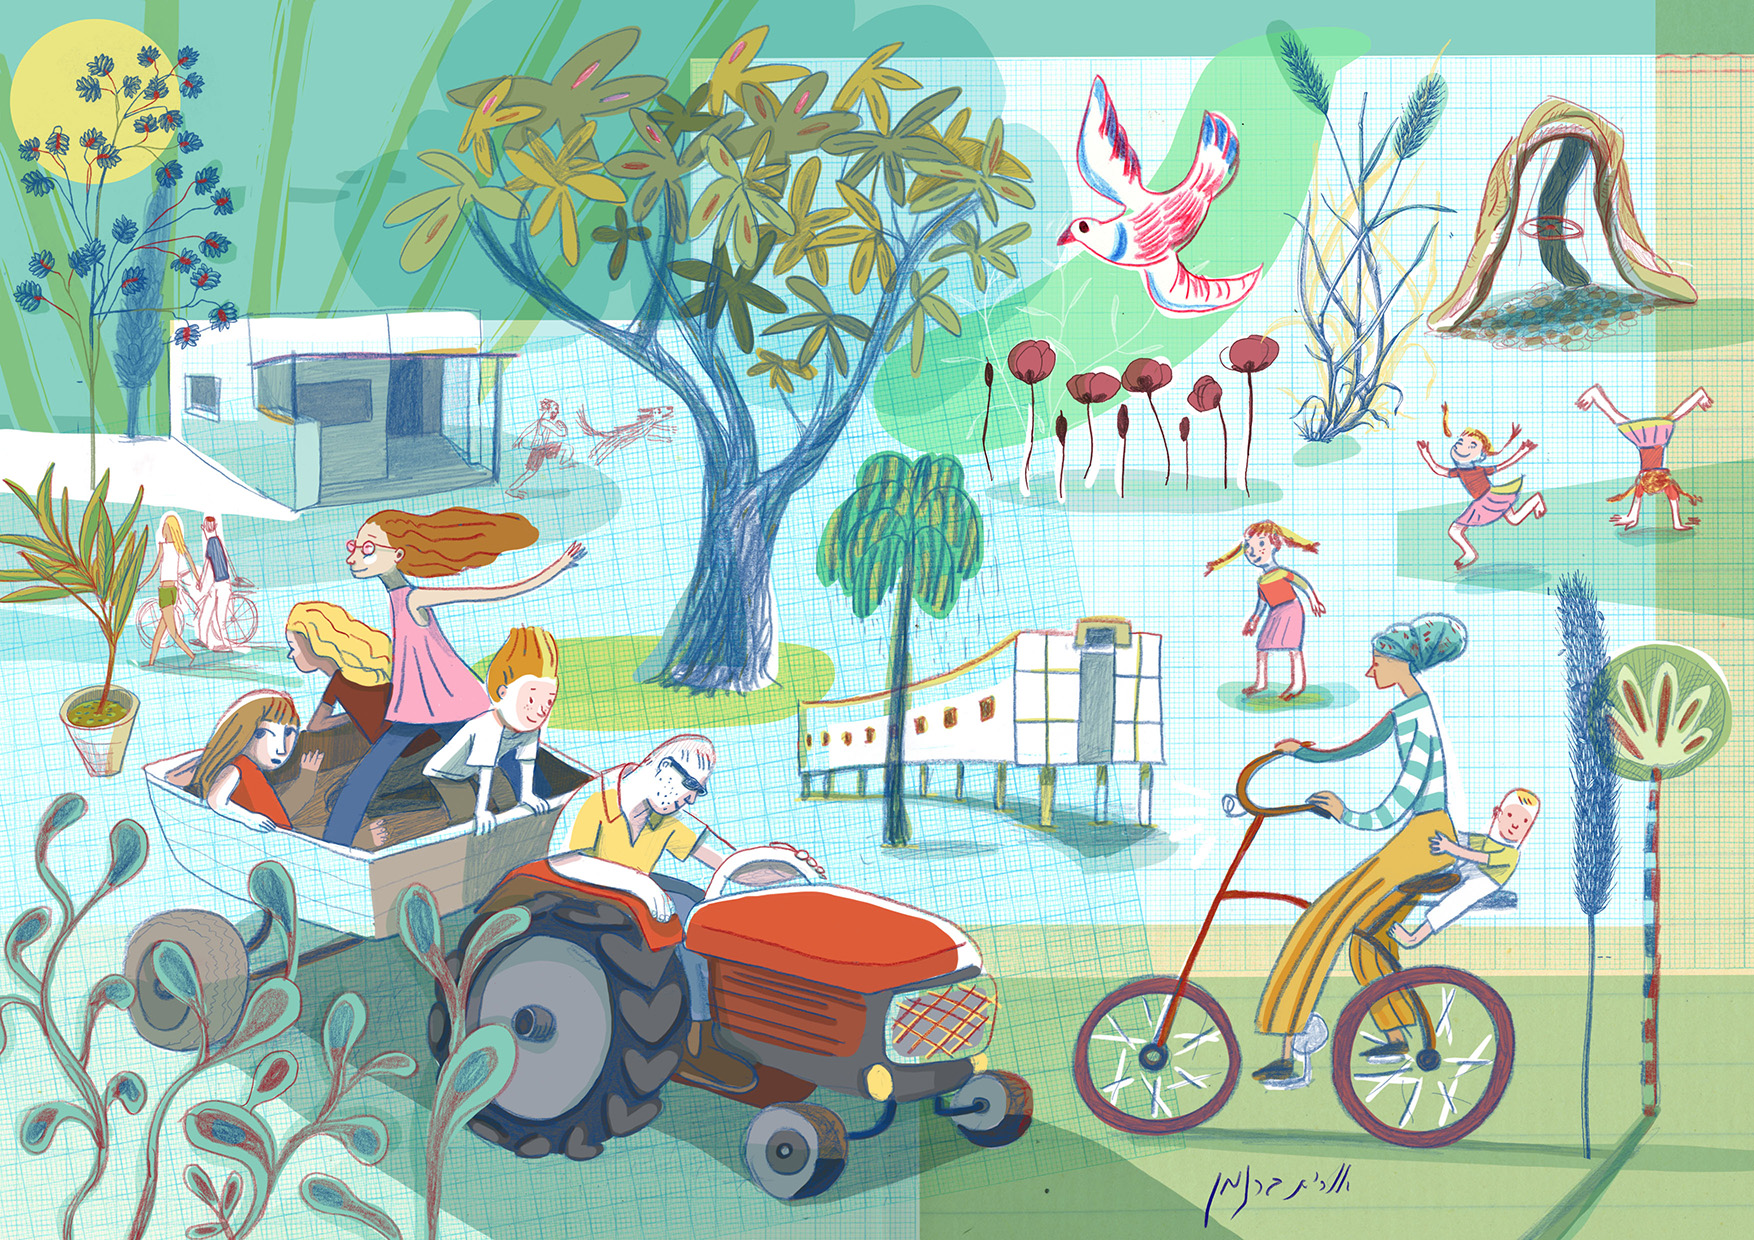 איור של אורית ברגמן, כרם שלום: איור בצבעים מגוונים עם סממני קיבוץ כגון: טרקטור, אופניים, ילדים/ות משחקים ועצים